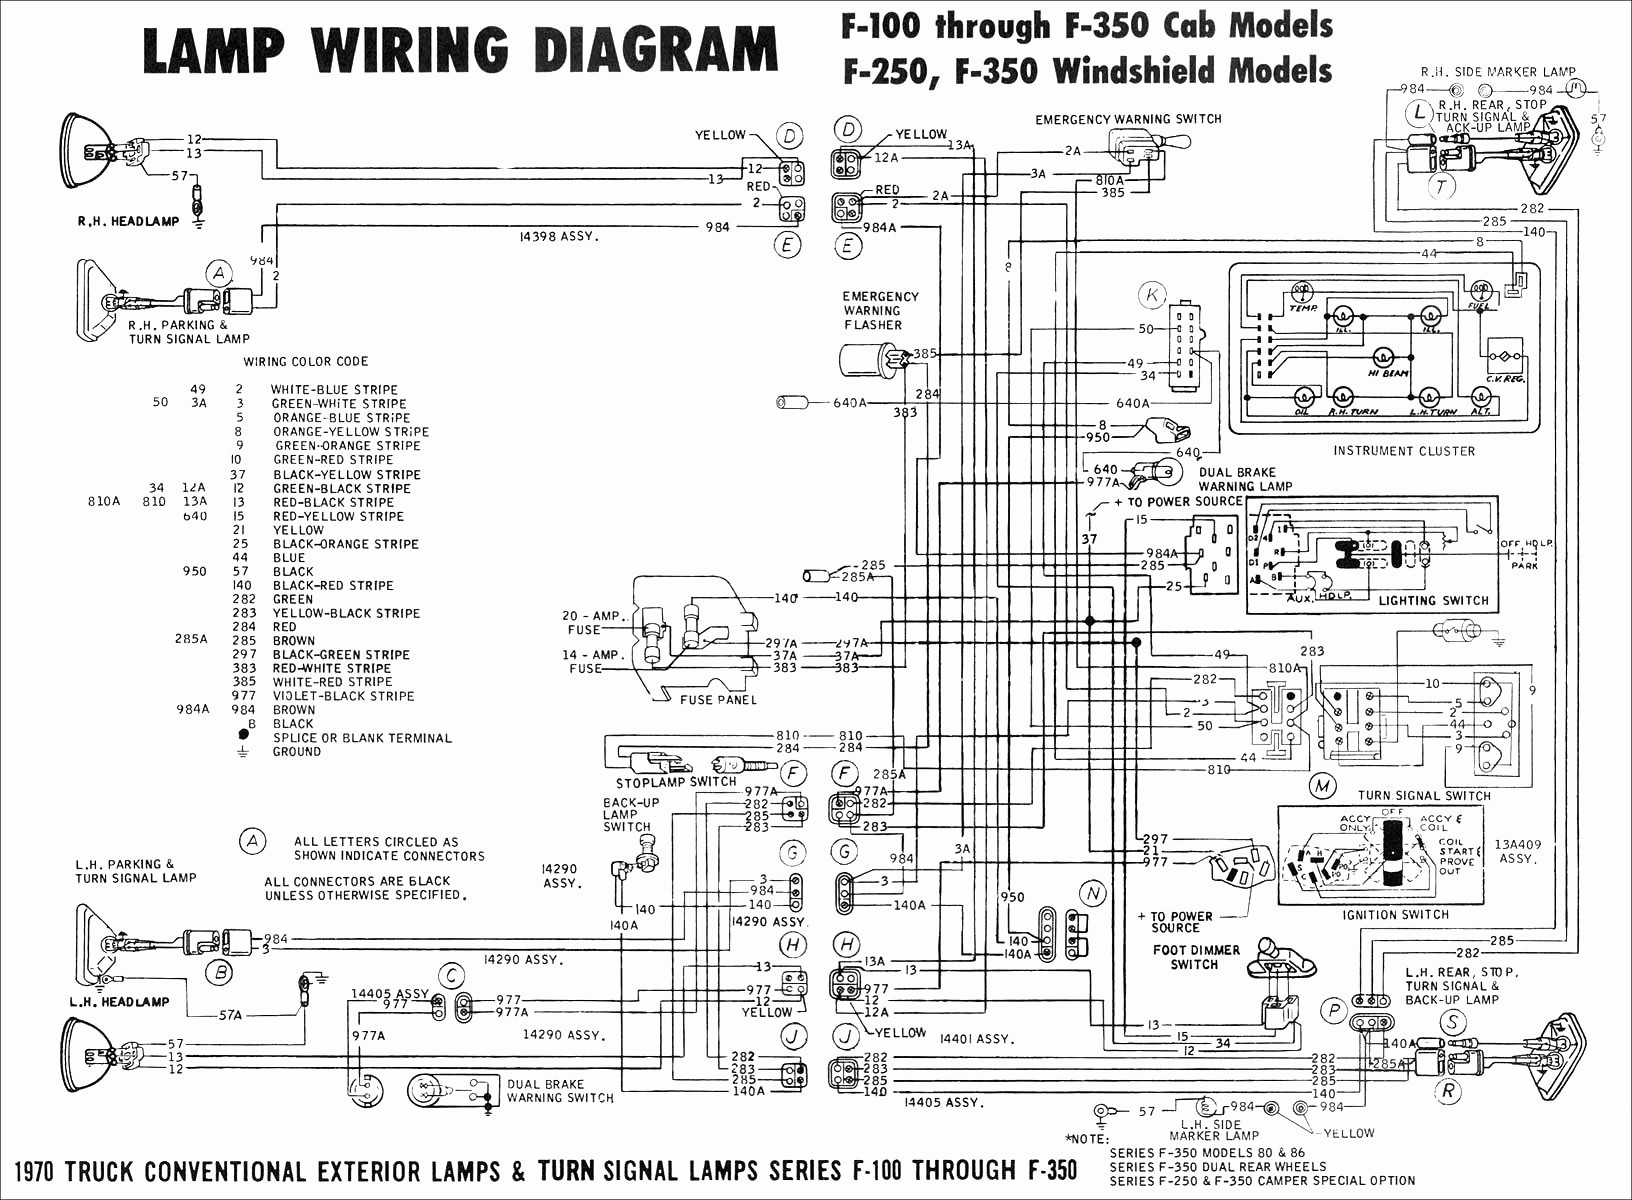 2000 ford F150 Parts Diagram ford F150 Parts Diagram for 2008 Wiring Diagram Paper Of 2000 ford F150 Parts Diagram